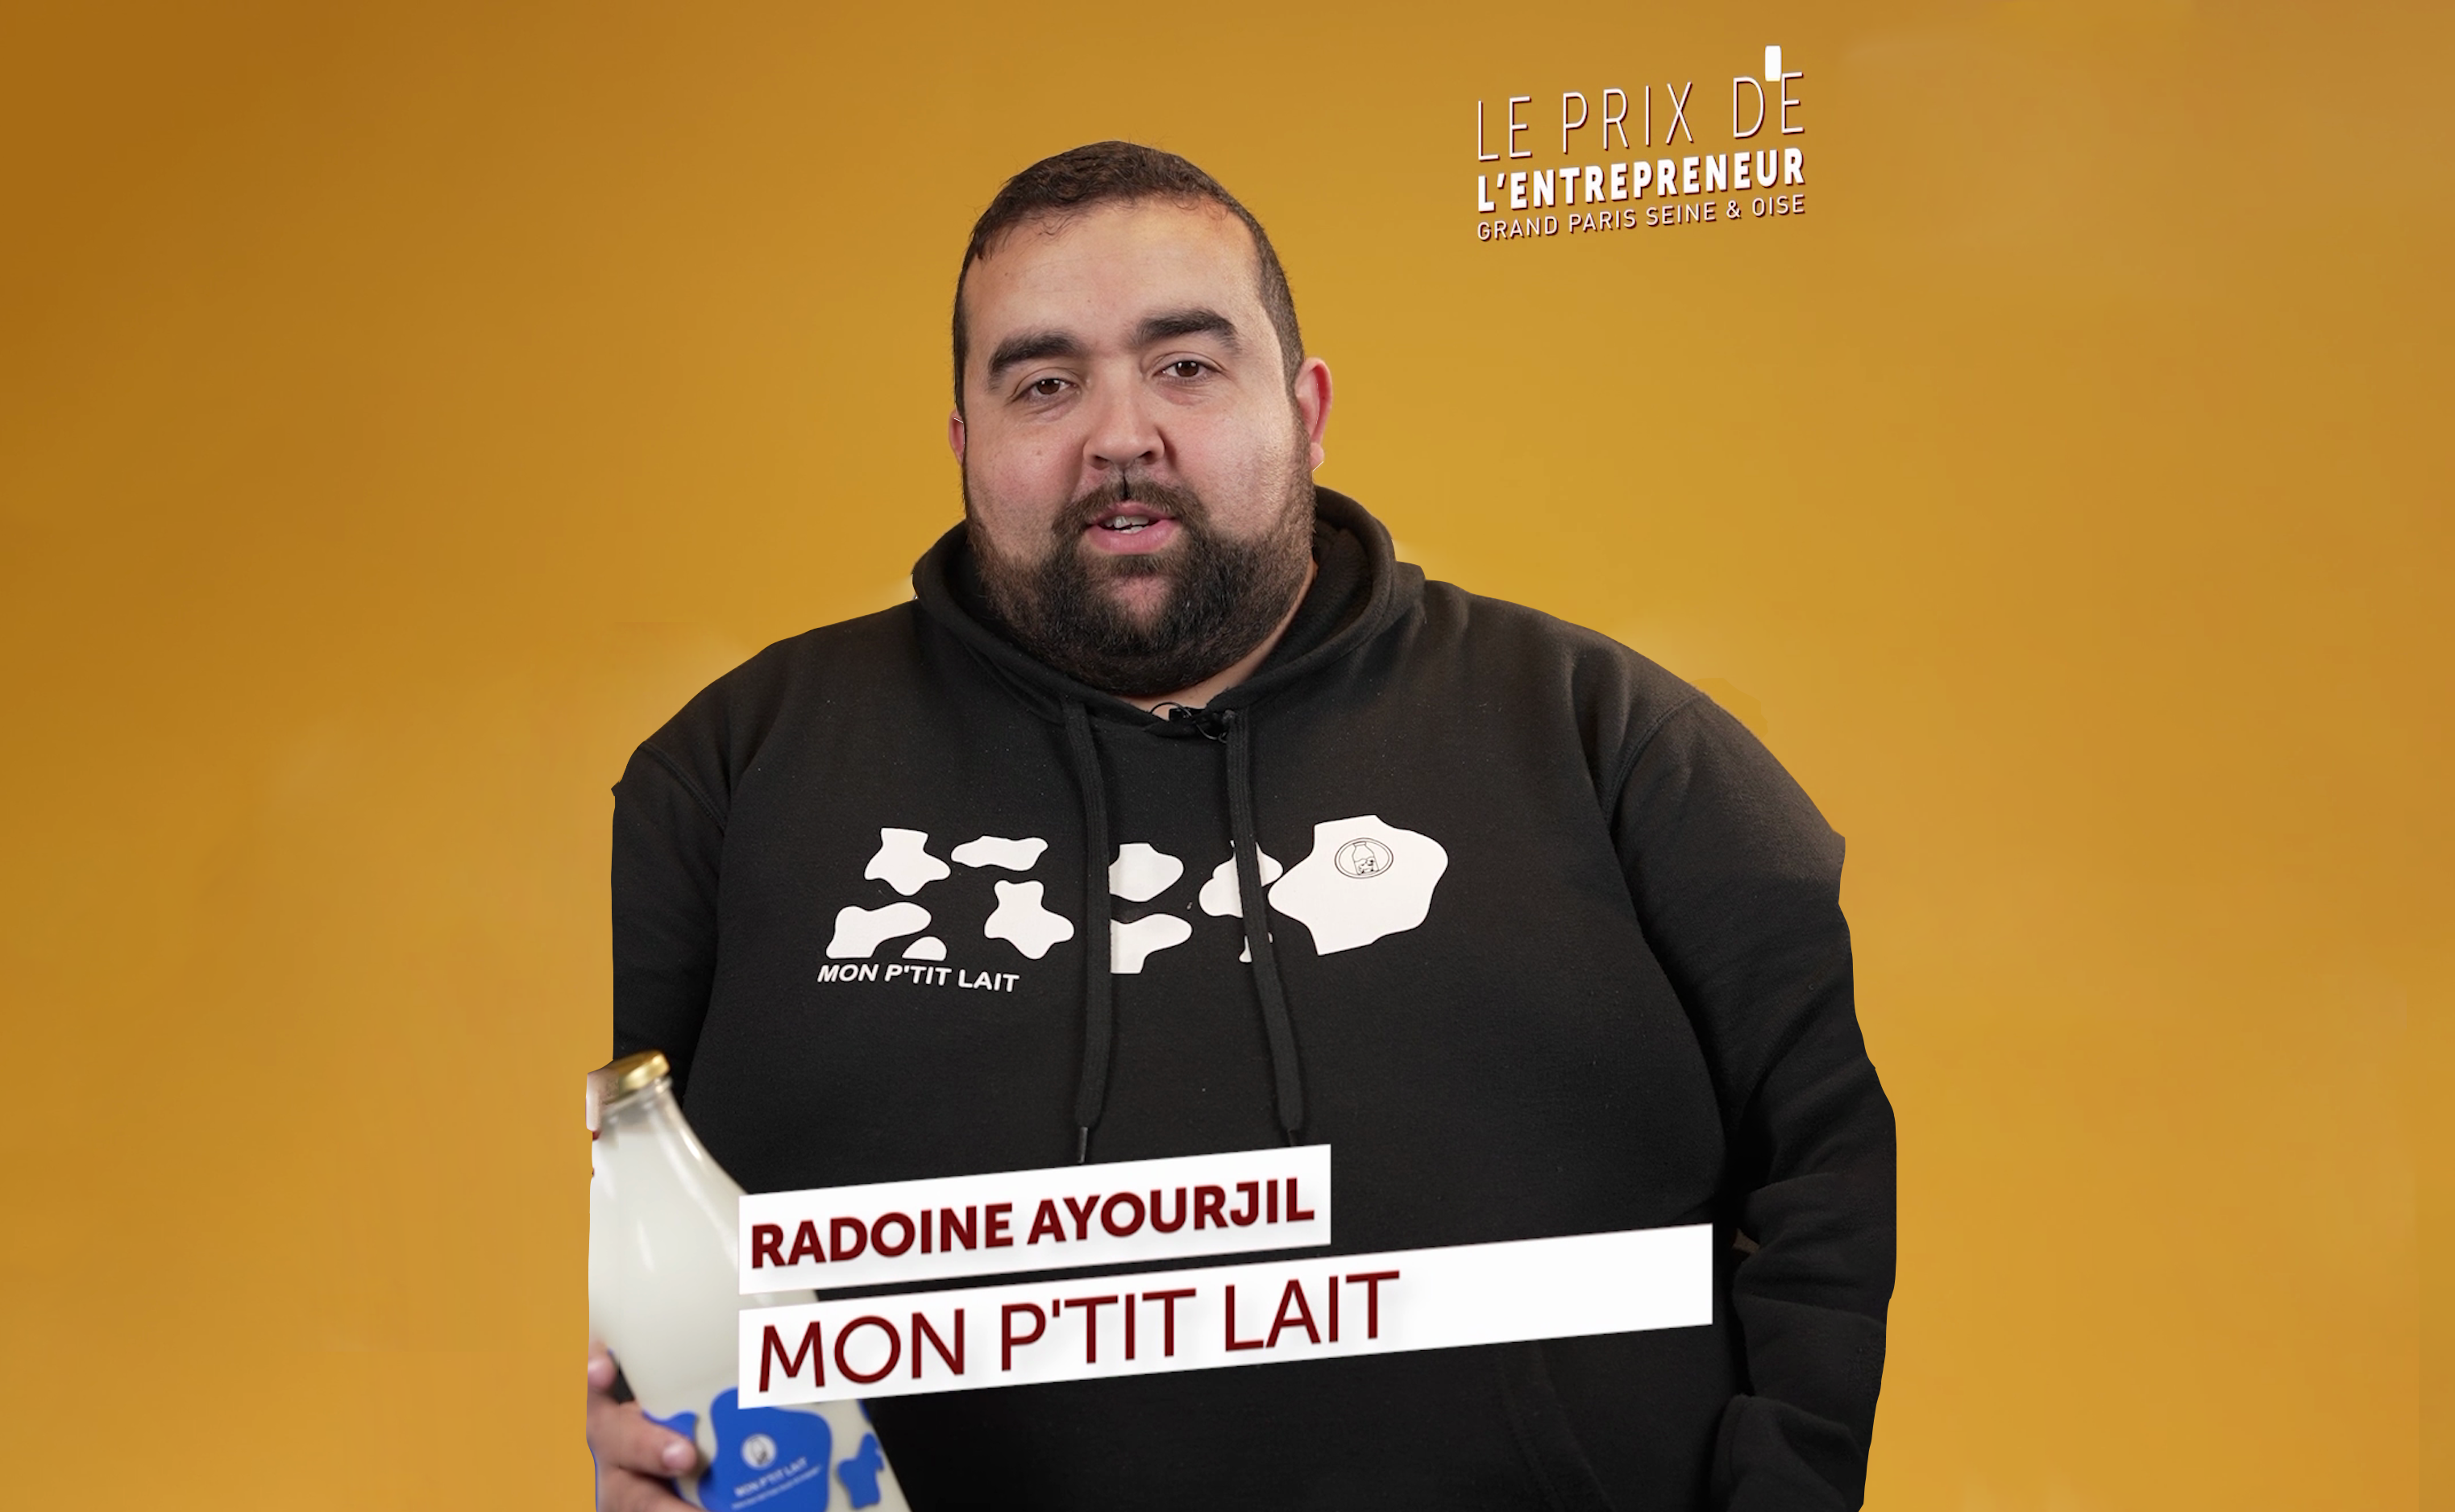 Interview de Mon P'tit Lait pour le Prix de l'Entrepreneur